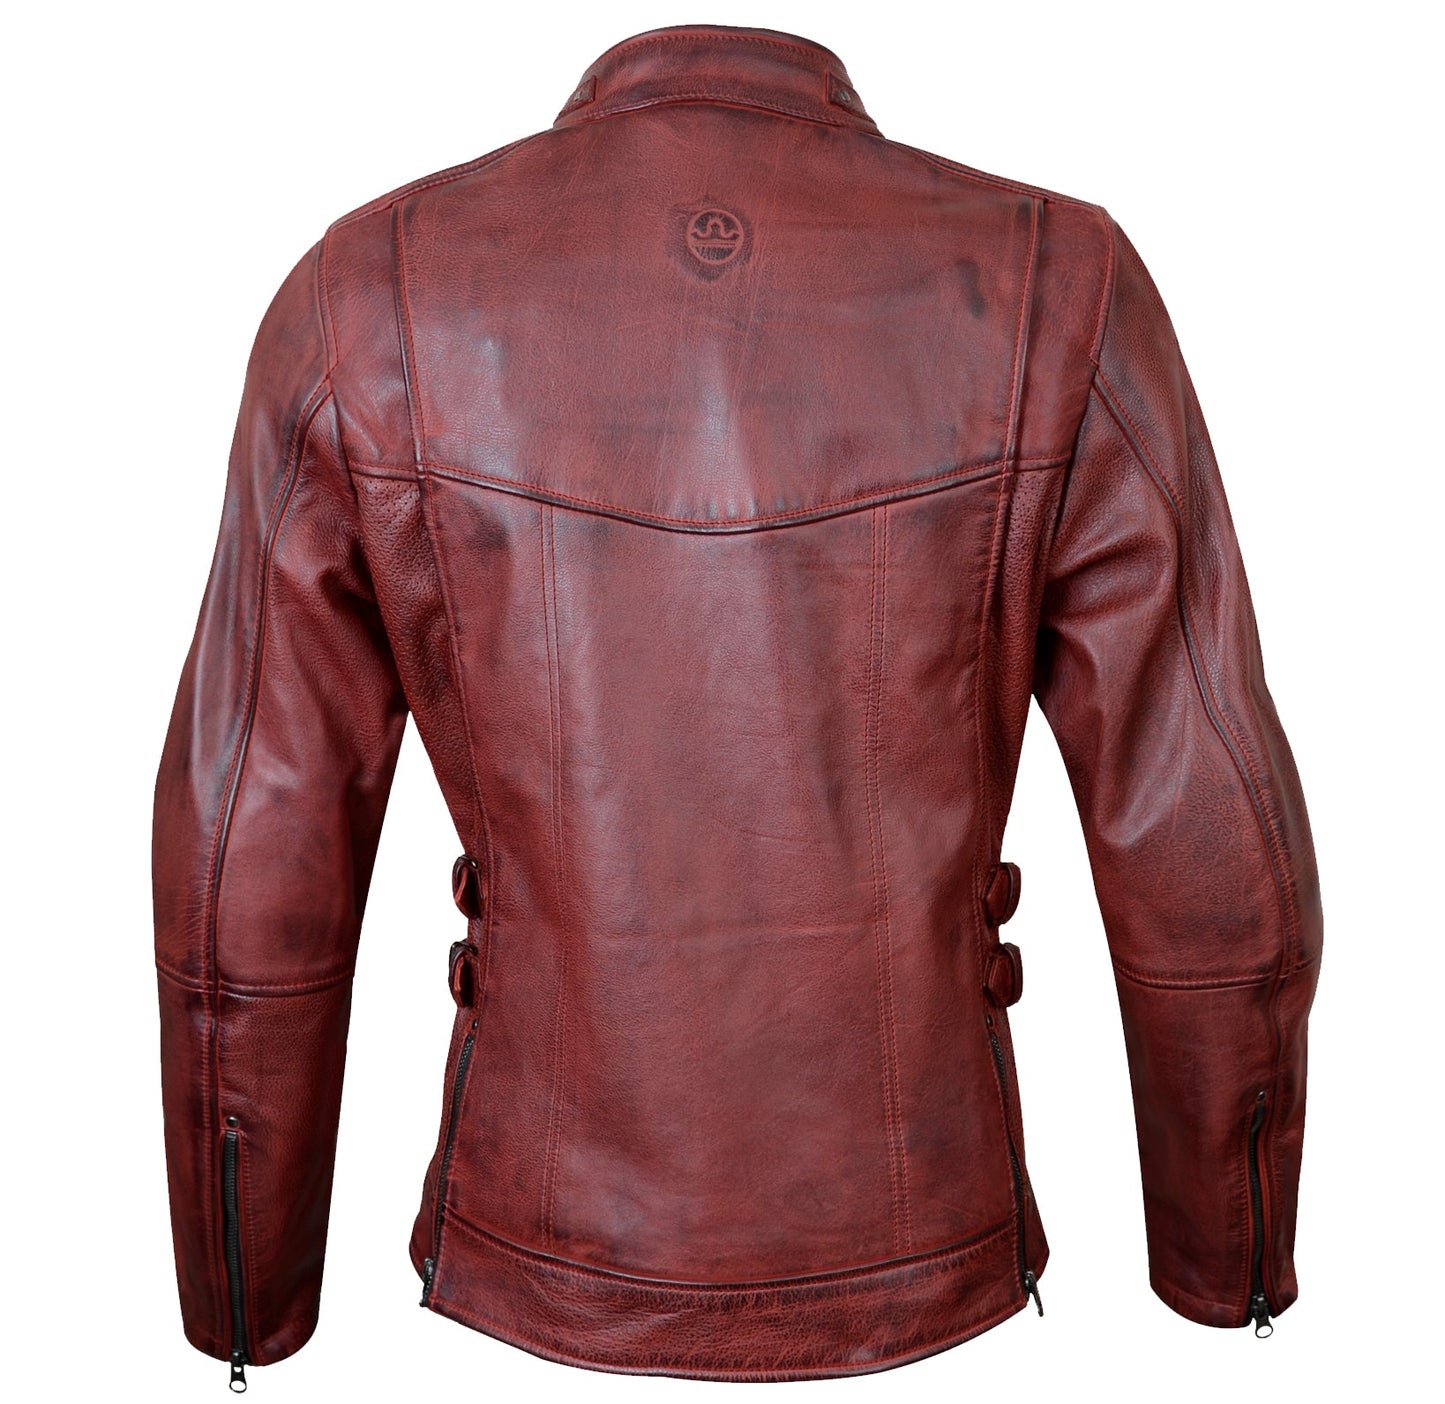 Bergen Leather Jacket - Oxblood